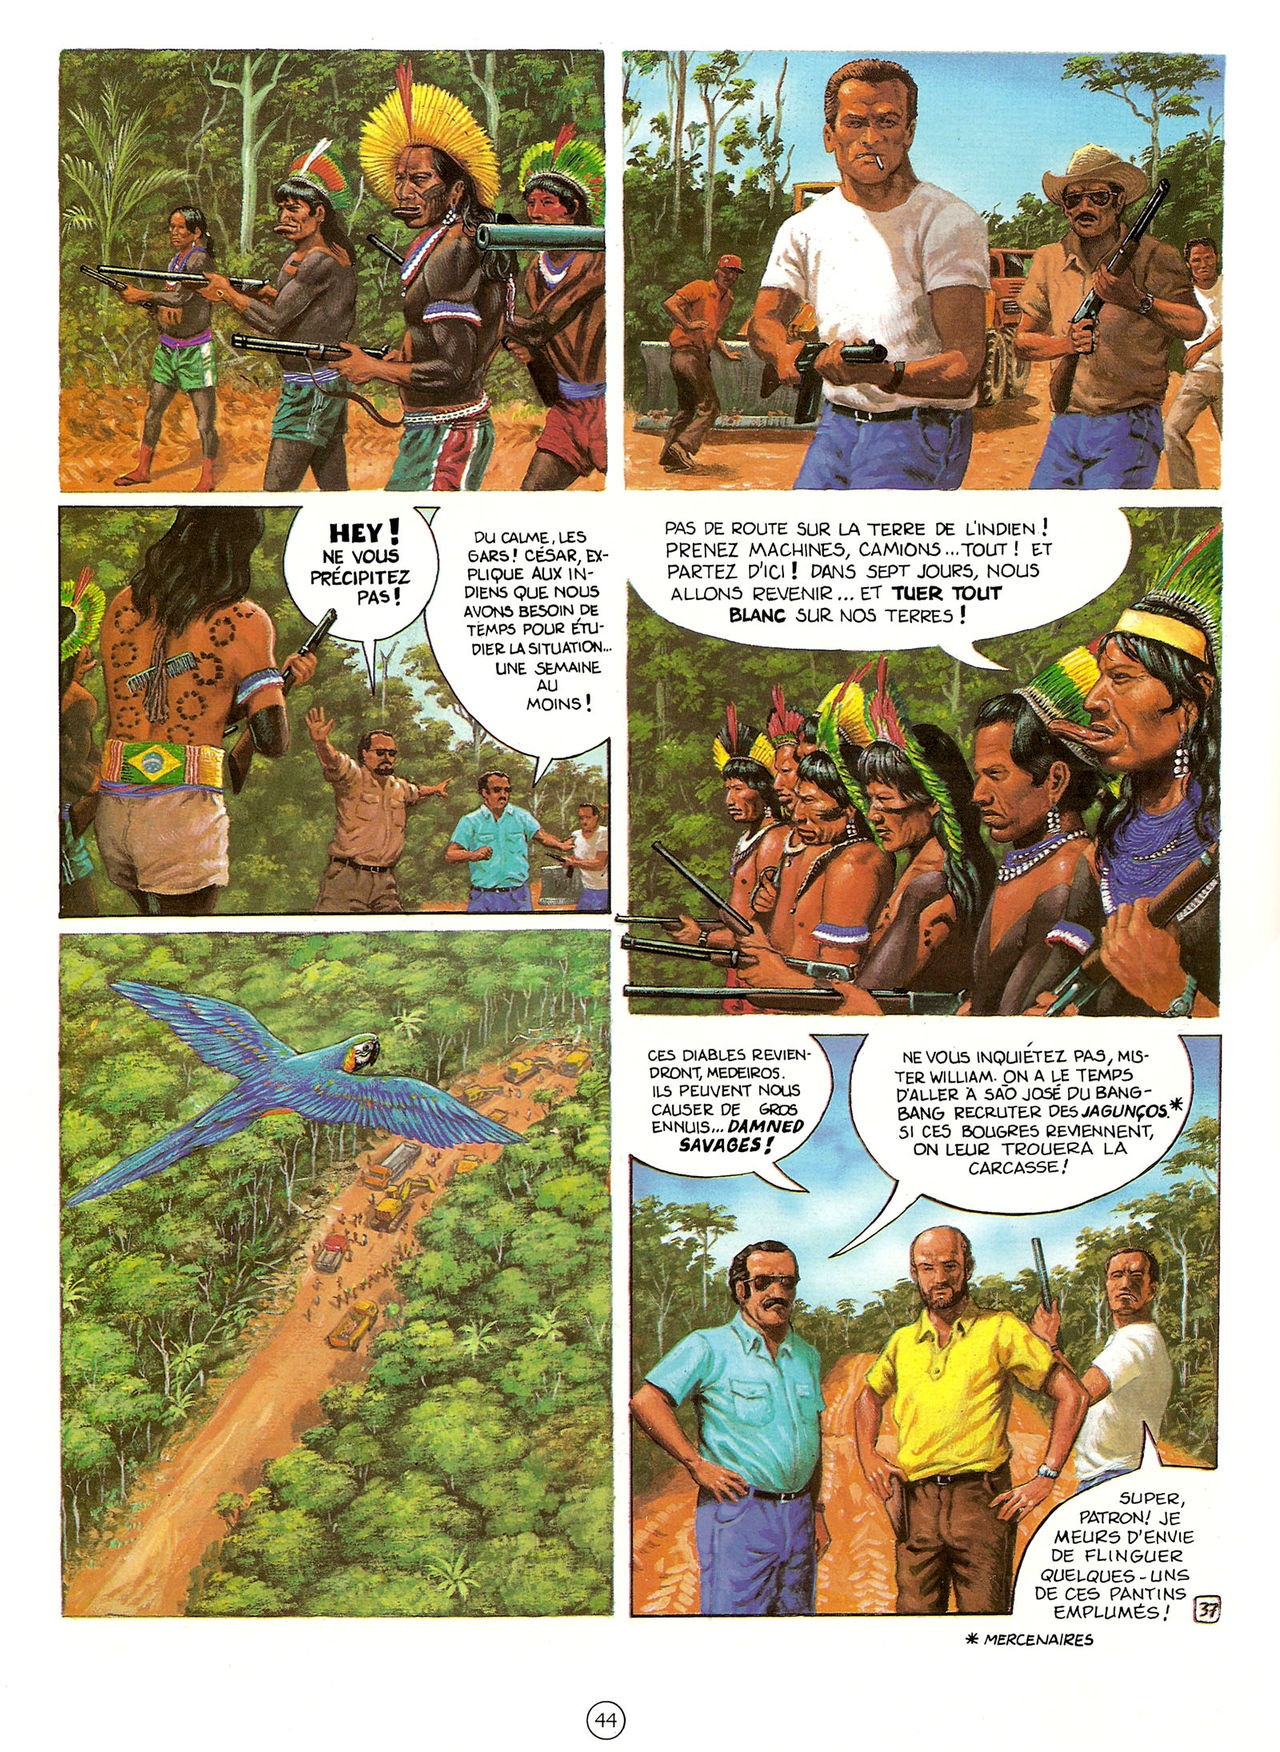 Les Aventures de Vic Voyage 05 - Brazil! numero d'image 44